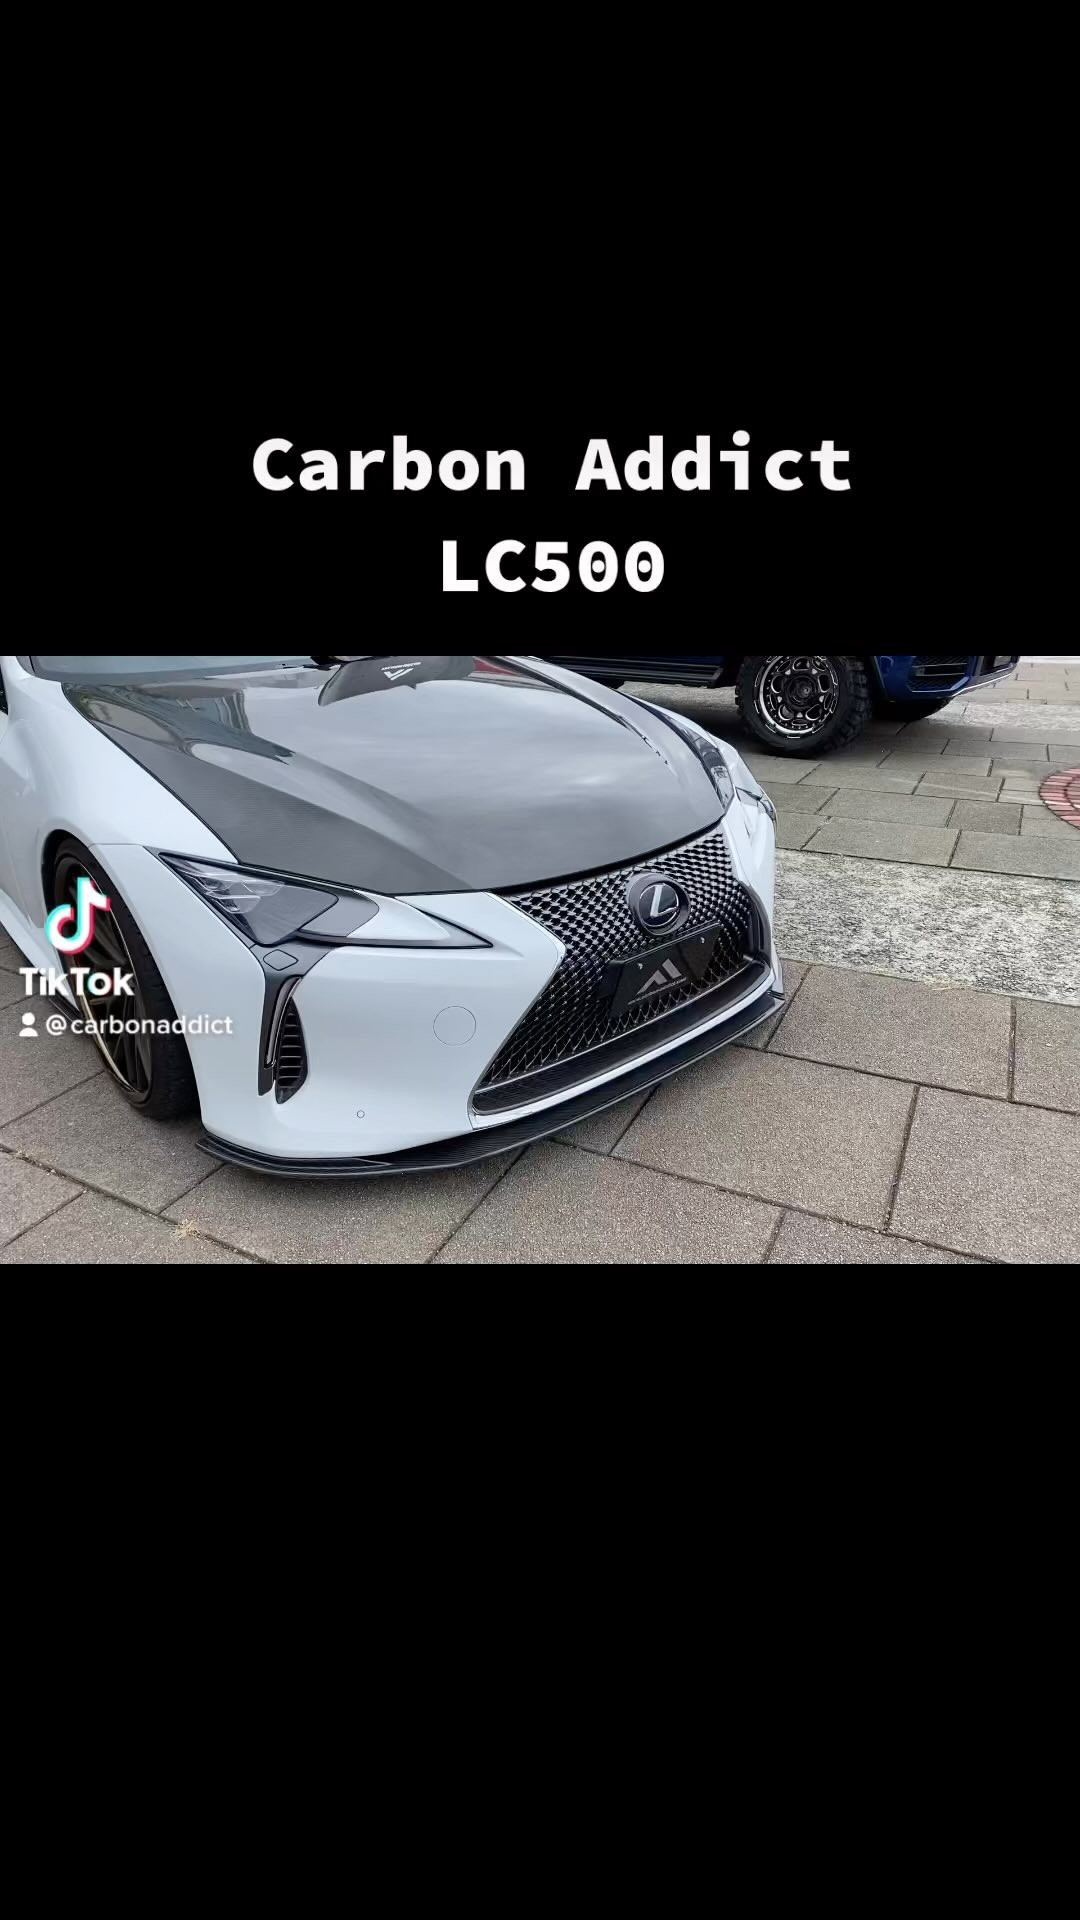 Carbon addict LC500